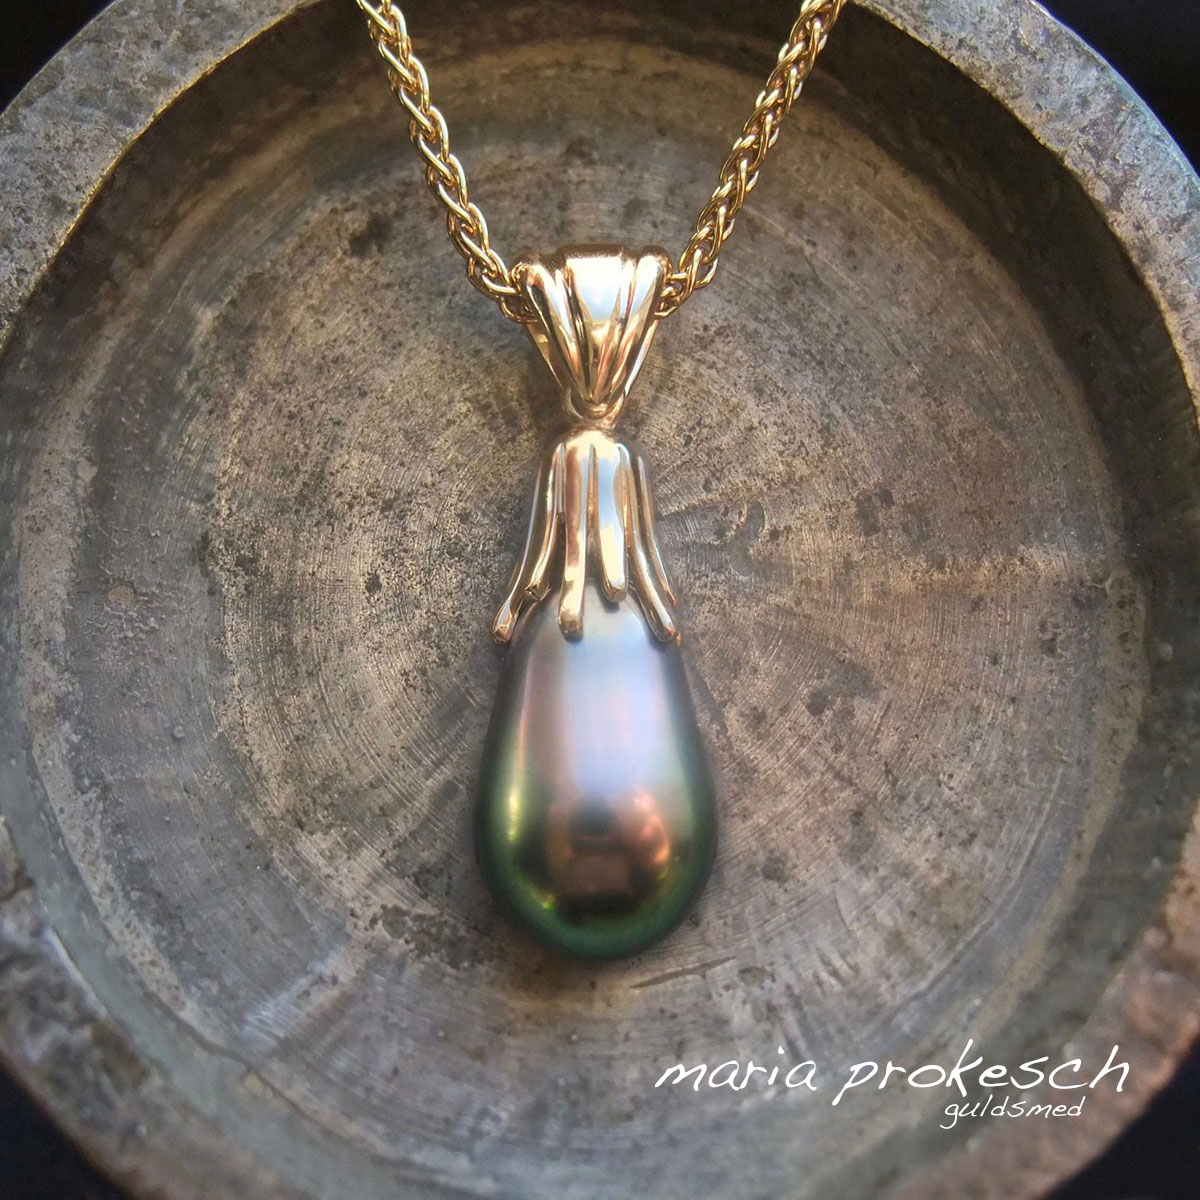 Perle vedhæng i 18 karat guld med auberginefarvet Tahiti perle i halskæde. Et anderledes og utraditionel design med guldpynt og patz øsken